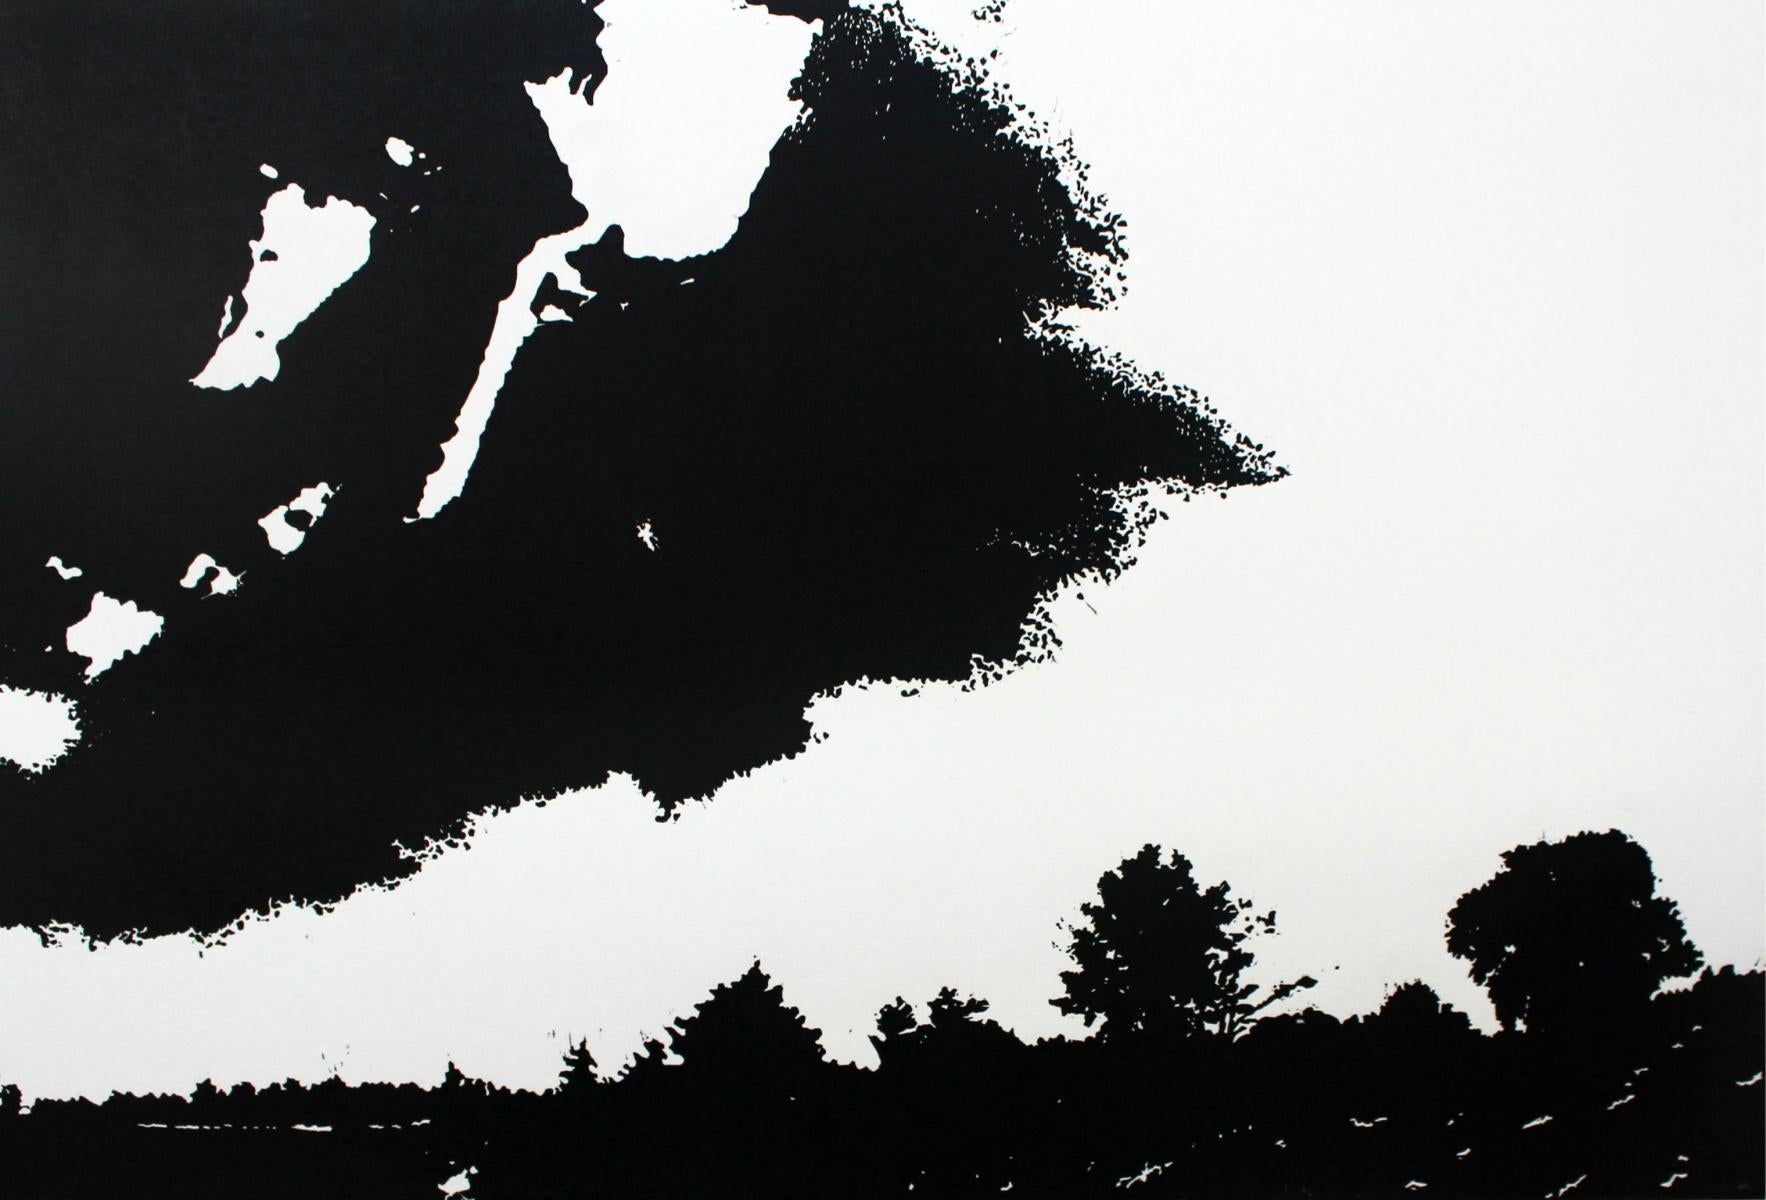 Reisebegleiter. Schwarz-weißer Linolschnitt-Druck figurativ und abstrakt, Minimalismus – Print von Jolanta Babicz